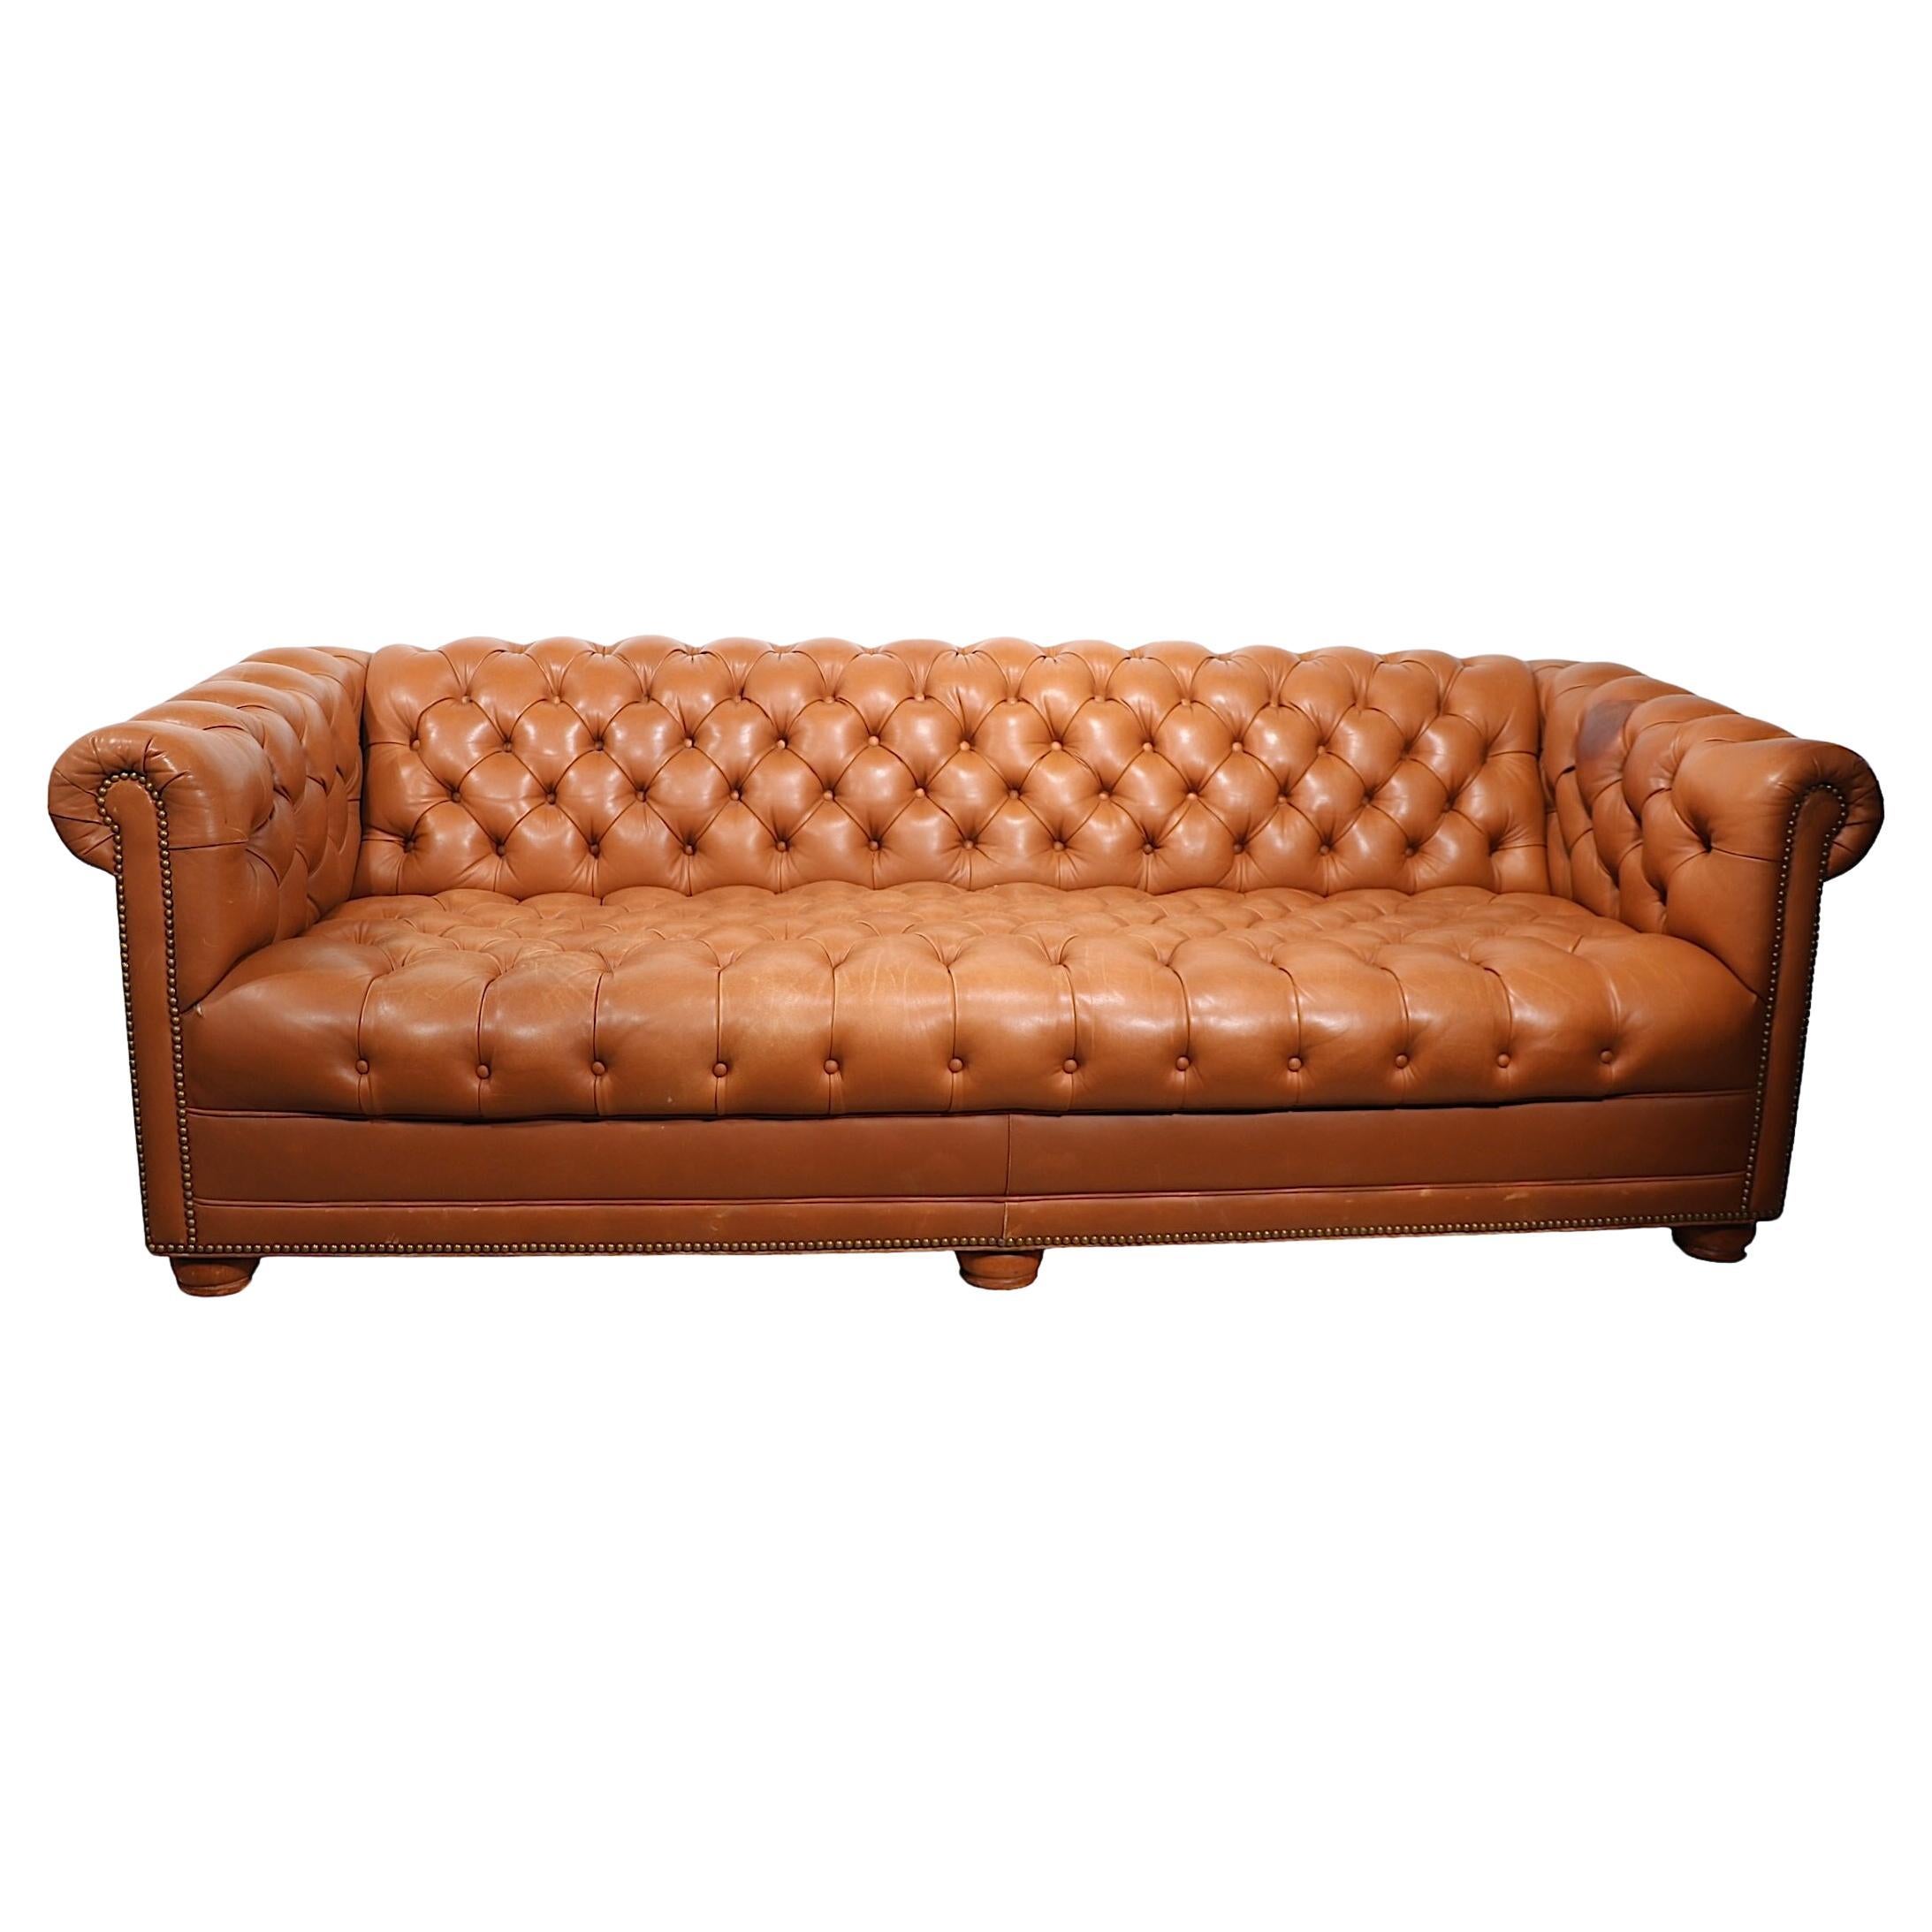 Unglaubliches Chesterfield-Ledersofa von einem bekannten Hersteller. Cabot Wrenn. Das Sofa verfügt über eine getuftete Sitzfläche, Rückenlehne und Armlehnen mit Messingnägeln und steht auf massiven Holzfüßen. Super schick, stilvoll und bequem,